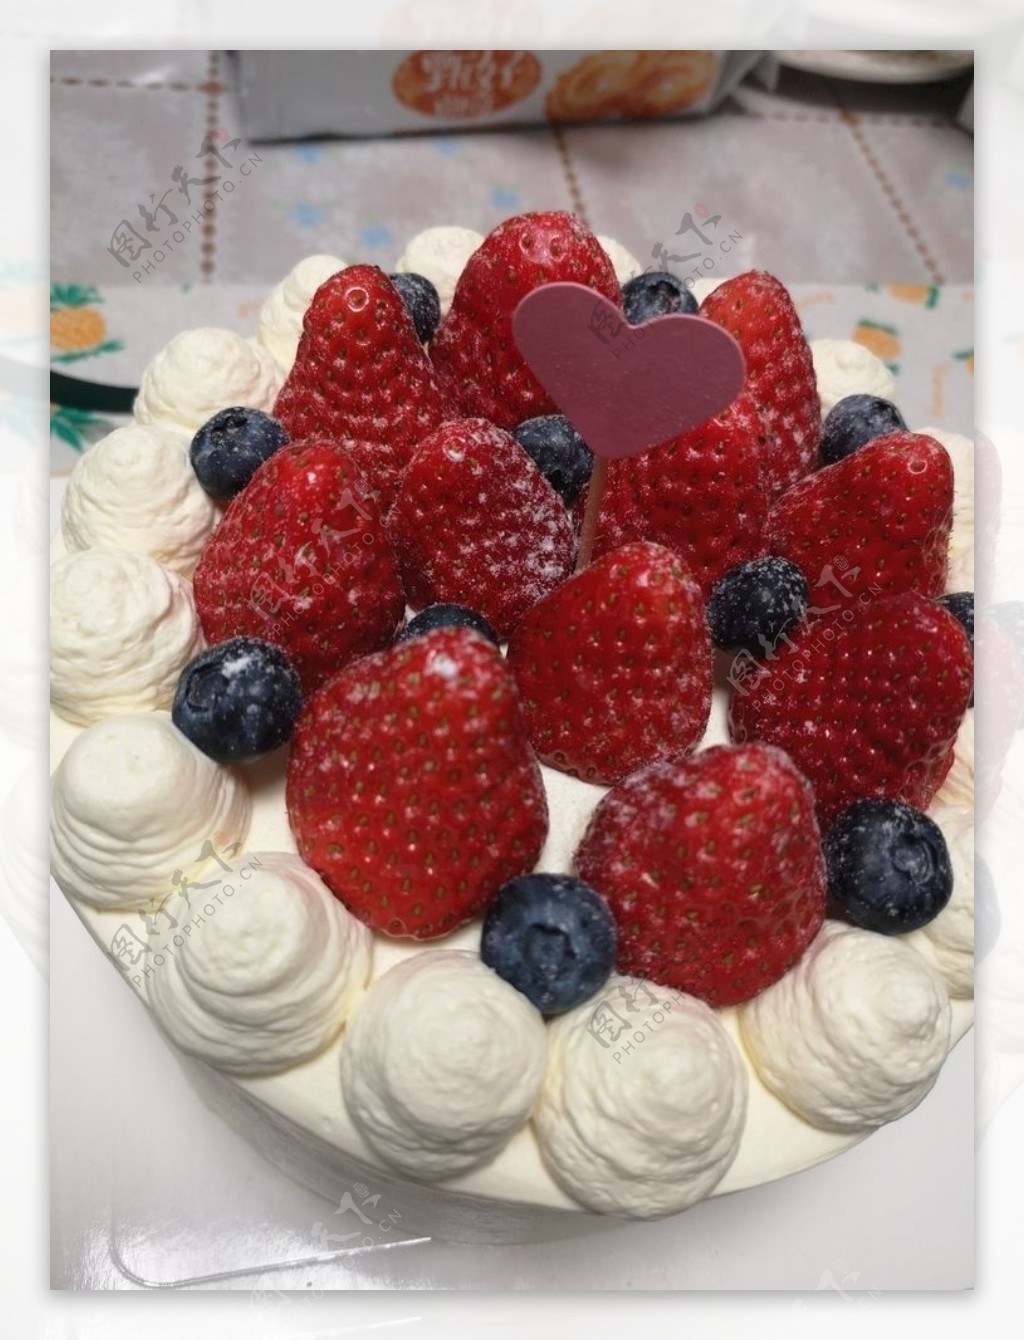 草莓奶油蛋糕